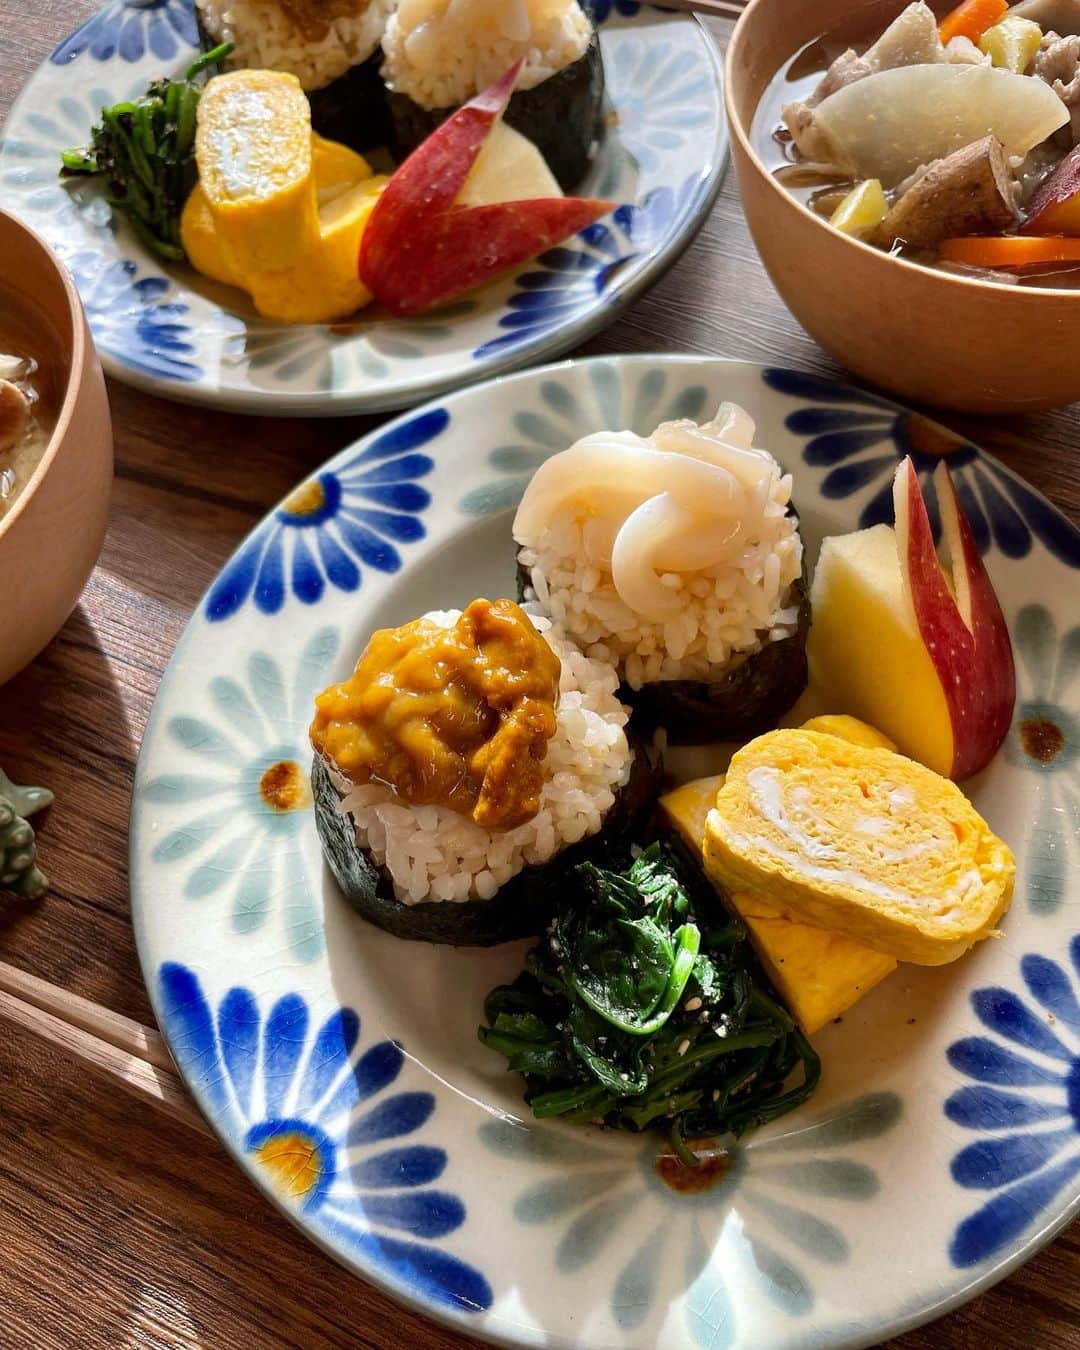 yukirichi119のインスタグラム：「2022/12/11(日) #休日朝ごはん   昨日、豚汁🐷いっぱい作りました。 これからの季節は豚汁最強。 具だくさんで暖まるし、 栄養も美味しさも満点💯 そして何より、主婦的には、 いっぱい作ると ご飯の支度が楽チンで良き🤣  🟤玄米白米ブレンドのまん丸おにぎり 🟤玉子焼き 🟤ほうれん草の胡麻和え 🟤ウサりんご🐰🍎 🟤2日目の豚汁  まん丸おにぎりにのってるのは、 今回、特別仕様よ✨ こんな贅沢、普段できないんだから😆  こんな真っ白で美しい塩辛、 見たことある❓❓❓ キラッキラしてるのよ。 オットも大絶賛🤩  北海道最果ての島、利尻島にある お土産屋さん、利尻亀一  @rishirikameichi_official さんの 「白いイカ塩辛」 先月出たばっかりの超推し！ 北海道産スルメイカの胴肉だけを使って、 薄皮も完全に取り除いて、 丁寧に丁寧に作られた塩辛。 塩辛が苦手な人も絶対食べられる！  そしてもうひとつは 「濃厚ひとねむりうに(雲丹一夜漬け)」 北海道利尻産の最高級うにを100%使って、 一晩じっくり塩水に漬け込んだ、 うにの旨み甘みが ギューってなったまさに名のとおりの 濃厚ひとねむりうに。 こんな濃厚なうに、食べたことない🙌🏻🙌🏻🙌🏻 美味すぎー😋  どっちもご飯にはもちろん、 そのまま酒の肴としてや パスタ、リゾットにも使える🥰  あ、ちなみに 玉子焼きに使った「利尻昆布の琥珀だし」も 利尻亀一さんのだよー！  気になったら、 利尻亀一 @rishirikameichi_official さんの 楽天市場店で今年いっぱい使える 専用のクーポンをいただいてるので、 ぜひぜひ使ってー🎁 2000円以上の購入で15％OFFになるよ😍 ➡️➡️➡️ クーポンコード▶JFA8-EL6N-R71B-URTW  --------------------------------------  気が向いた時、 ちょこちょこ投稿、マイペースで。  ブログもそんな感じで更新してますので、 もし良ければ チェックしてみてくださいませー🙏🏻  ゆきりち。ブログ、 著書📕1冊目2冊目も プロフ( @yukirichi119 )から各リンク先に飛べます🤗  --------------------------------------  #利尻亀一  #sponsored #pr  #休日 #朝食 #おはよう #おはようございます #おにぎり #雲丹 #塩辛#利尻島 #利尻 #ウニ #イカの塩辛 #玉子焼き #白いイカの塩辛 #濃厚ひとねむりうに #和食 #アンバサダー #和食ごはん #白いイカ塩辛 #地味飯 #朝ごはん #健康 #ダイエット #北海道 #夫婦ご飯  #washoku #豚汁」